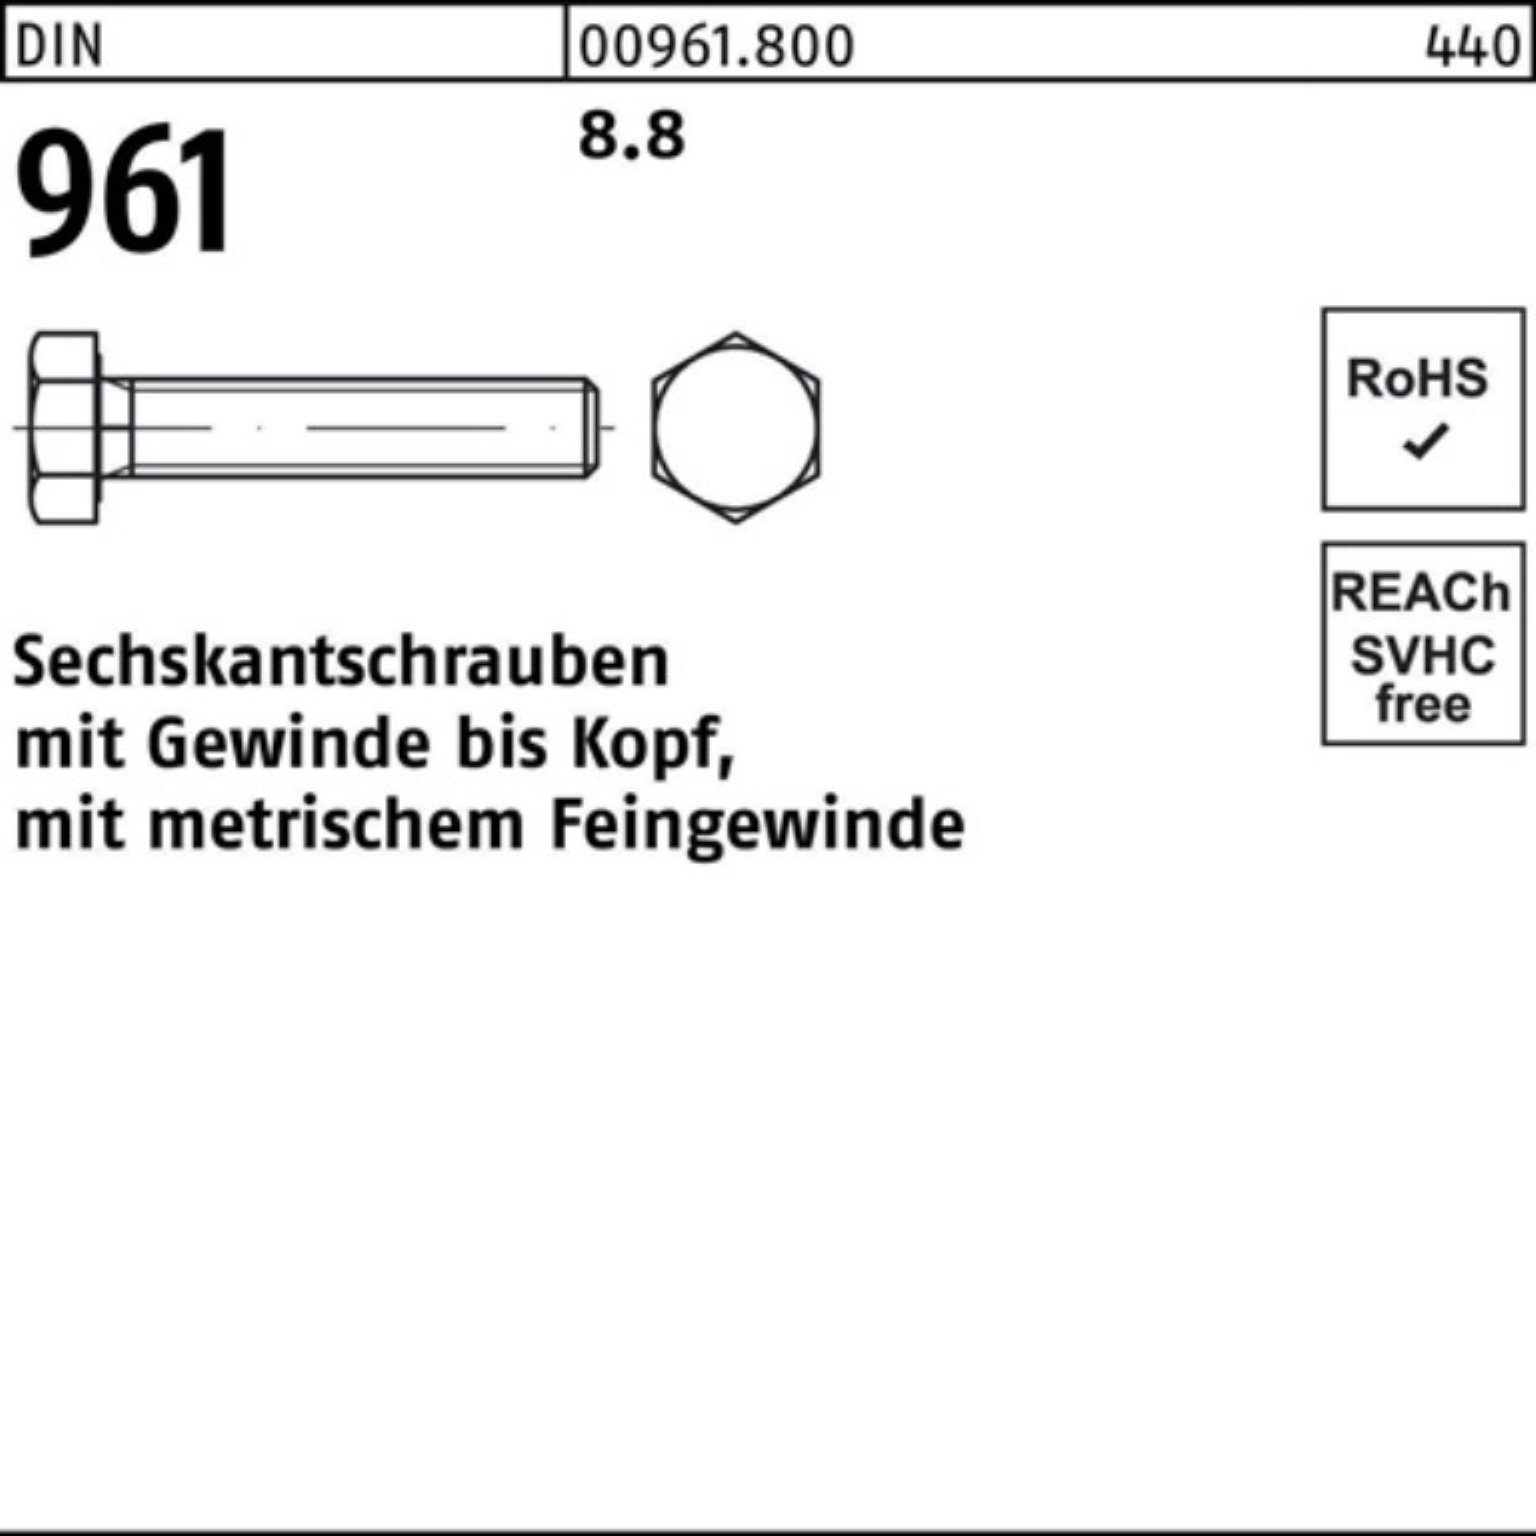 Sechskantschraube Reyher 100er 8.8 M16x1,5x Stück 25 90 961 VG Sechskantschraube Pack DIN DIN